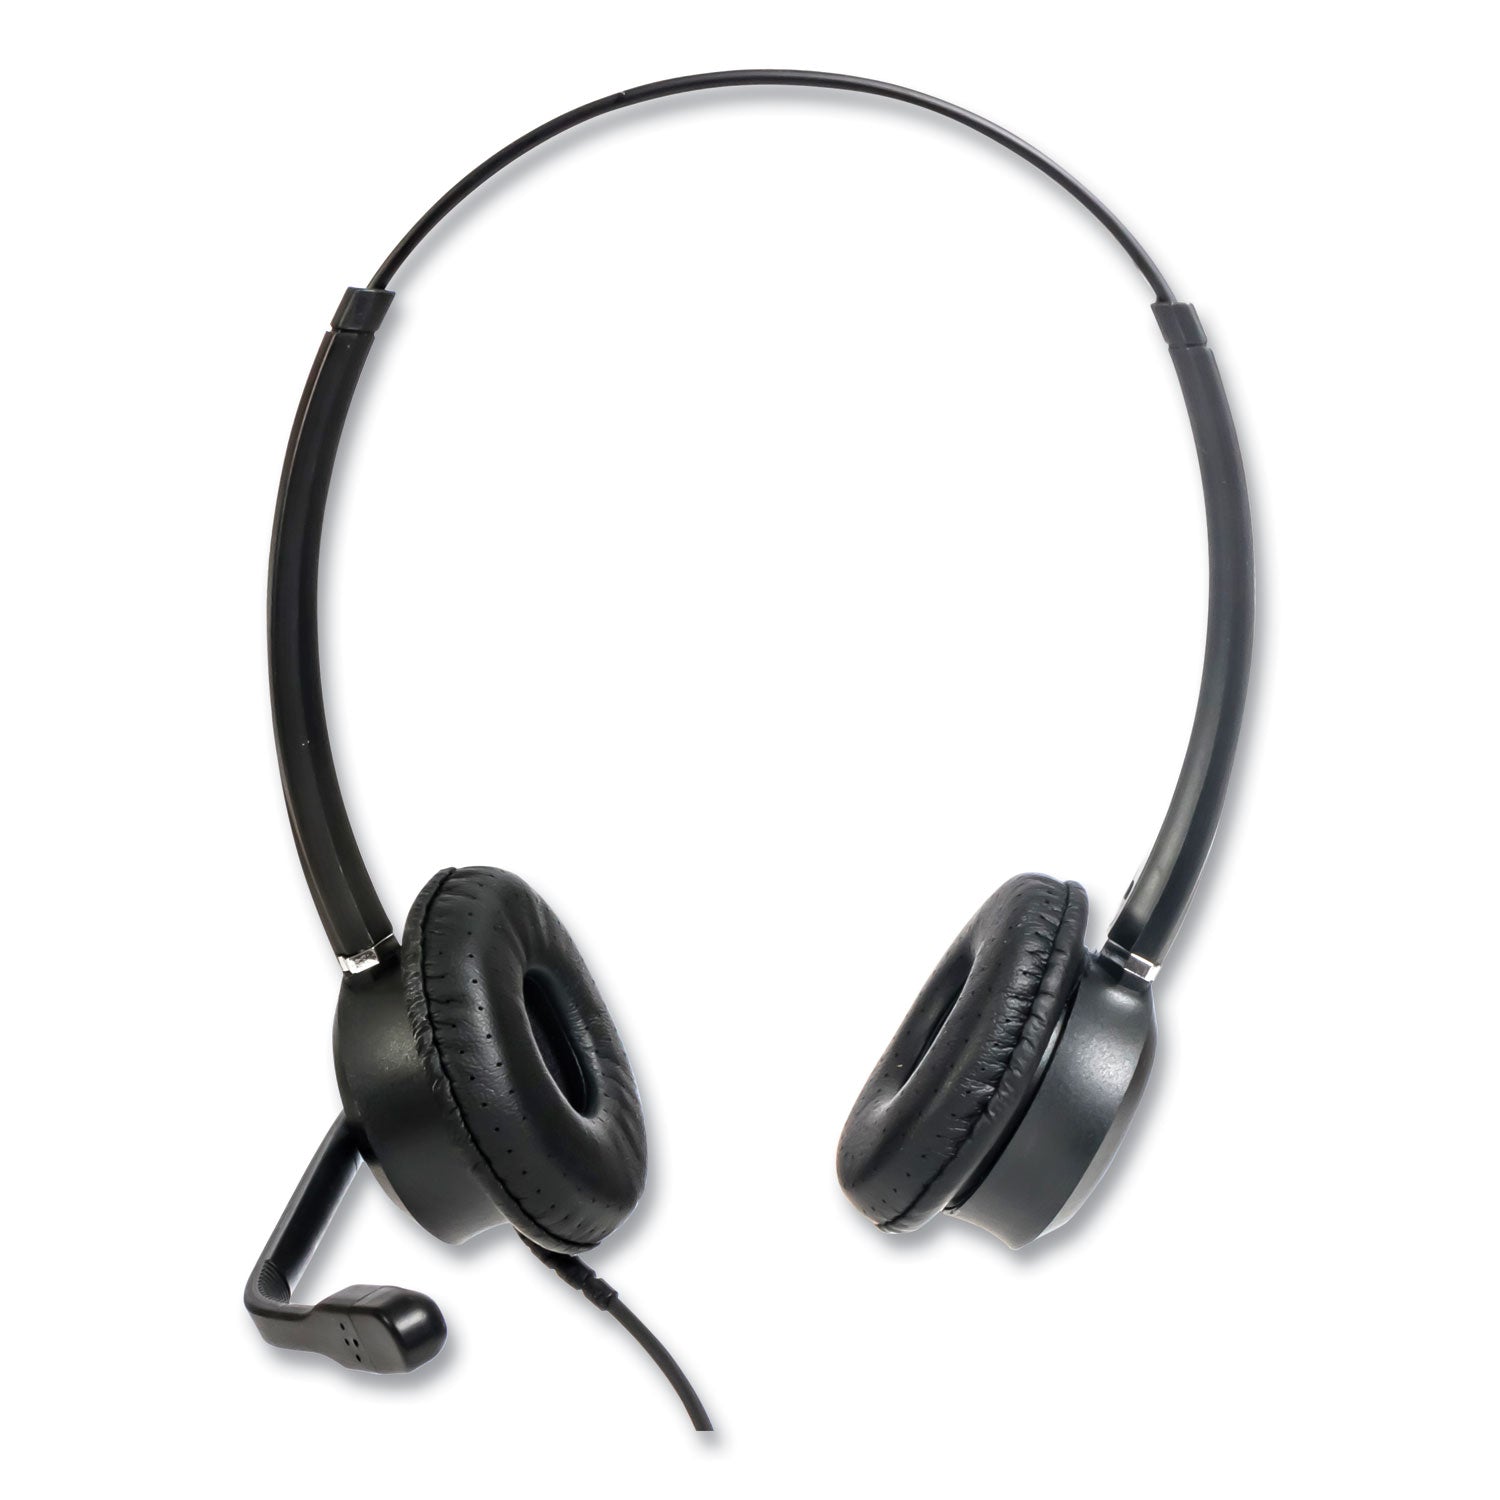 zum-zumrj9b-binaural-over-the-head-headset-black_sptzumrj9b - 4